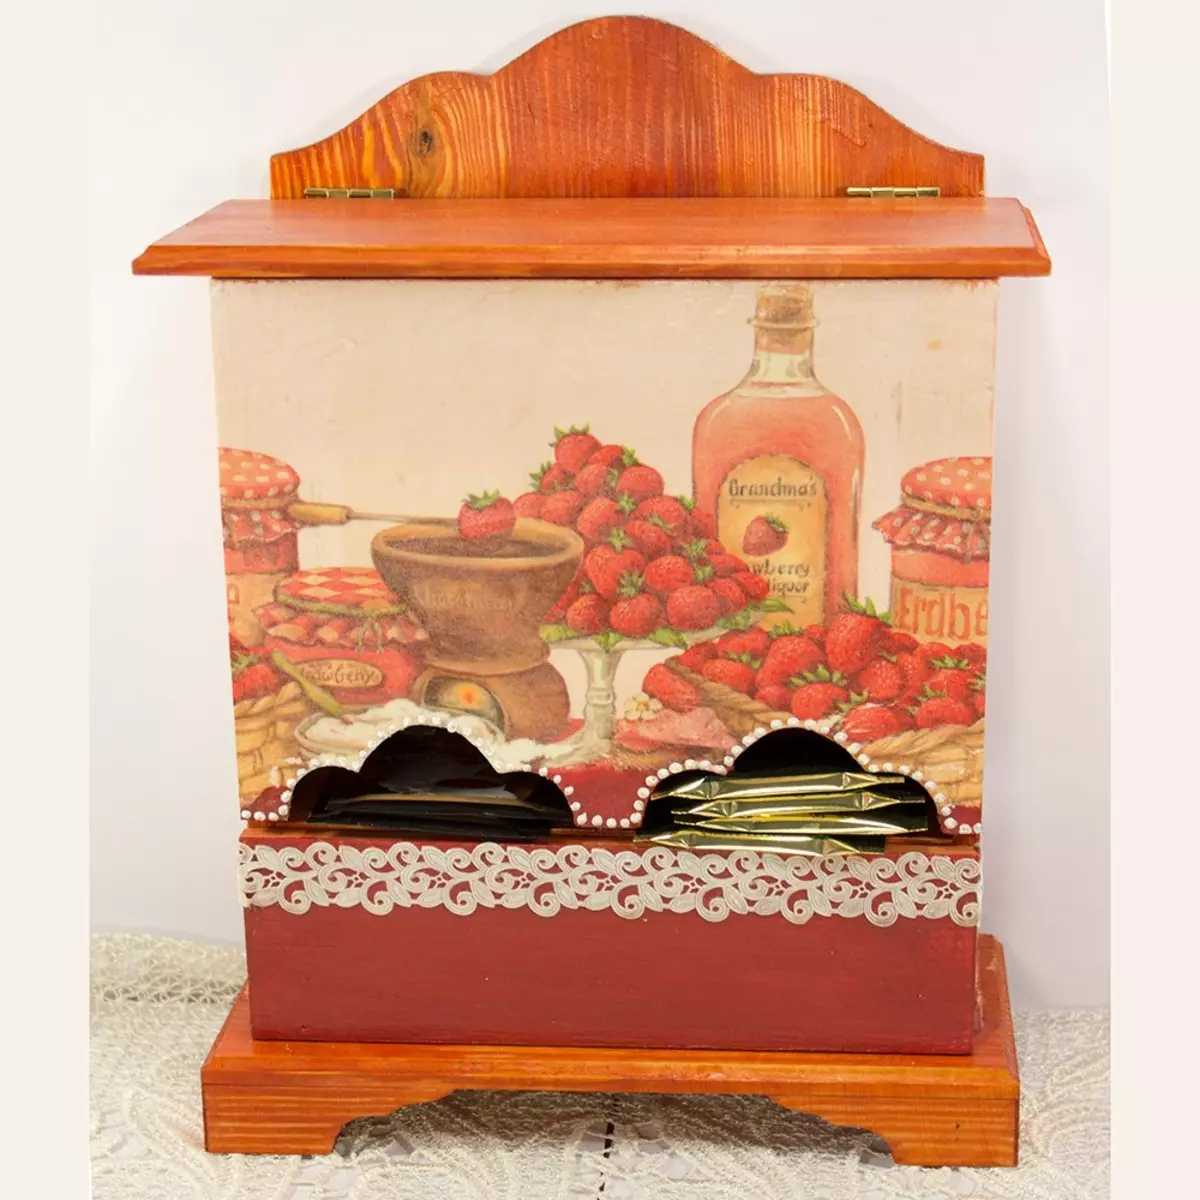 Tea House of multiplex (29 slike): Kuća za čaj u crteže sa svoje ruke, šablone od praznine dimenzija, dekoracija 26794_28